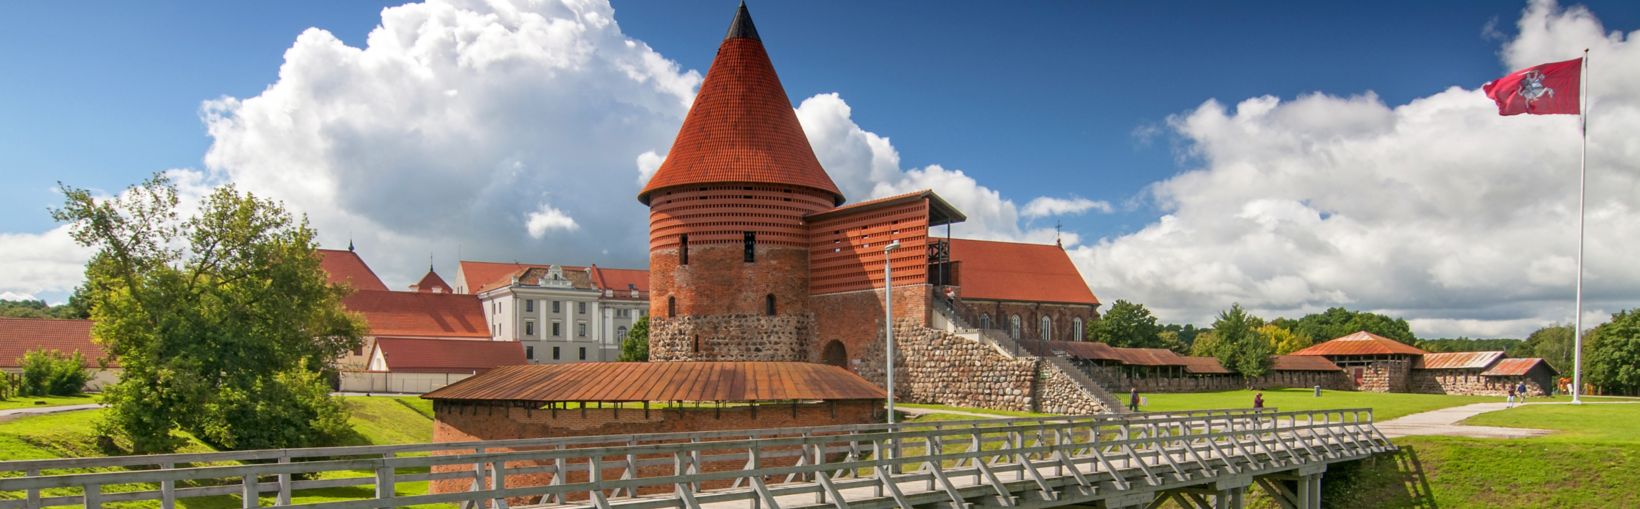 Kauņas pils, celta 14. gadsimta vidū, gotiskajā stilā, Kauņa, Lietuva.